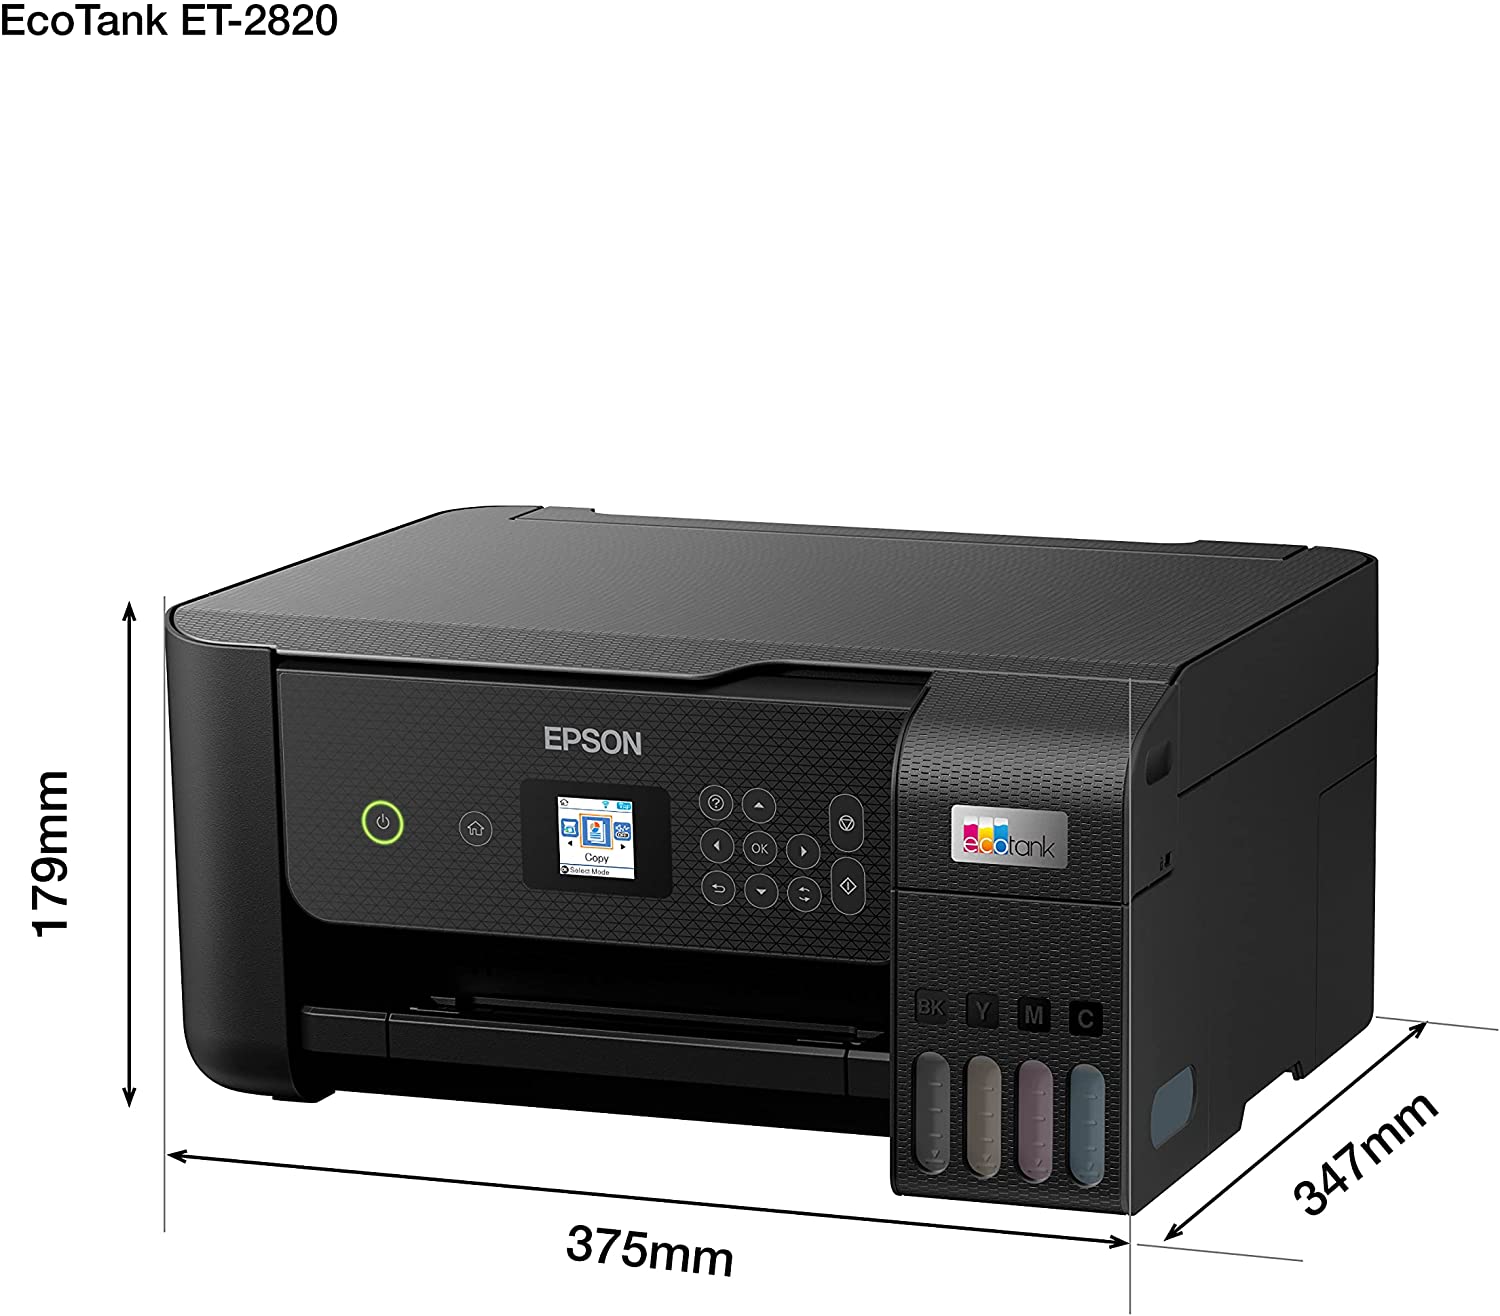 medidas de las impresora Epson EcoTank ET-2820